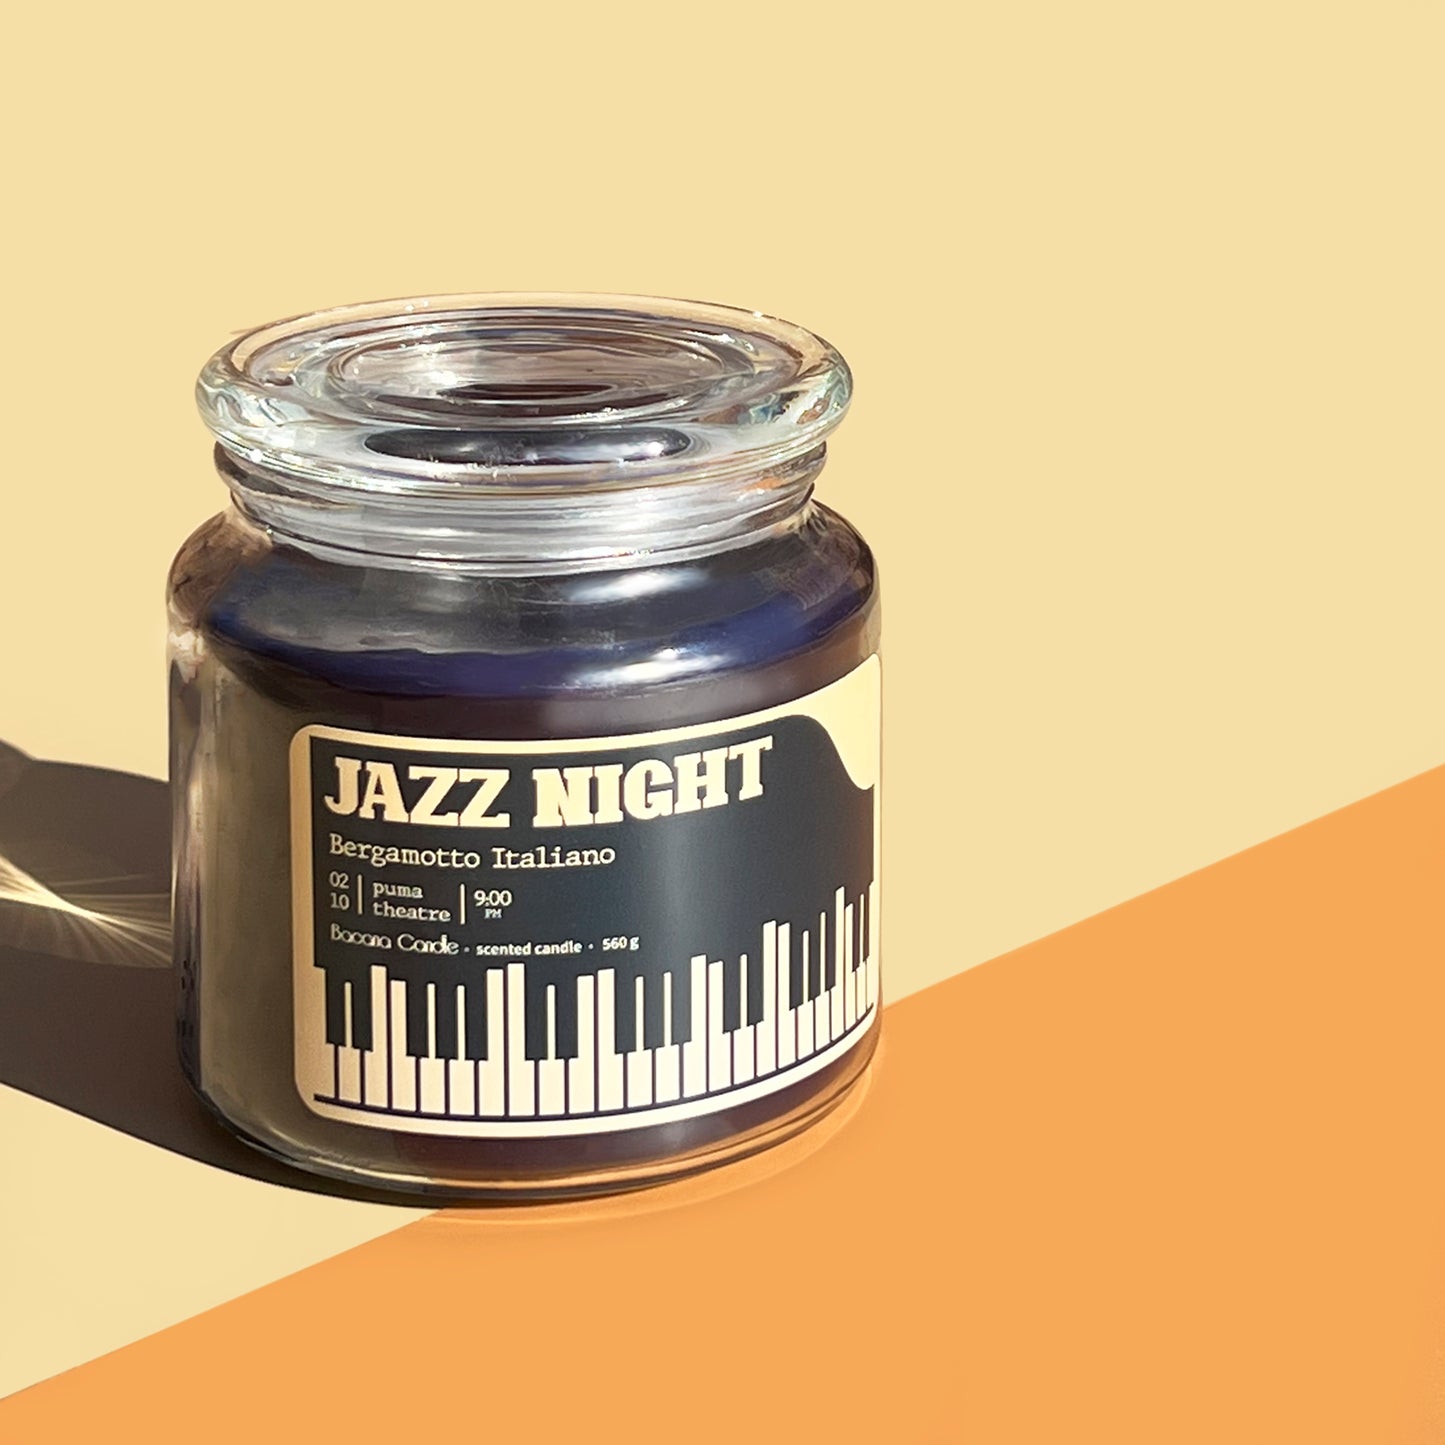 Jazz Night - Bergamota Italiana